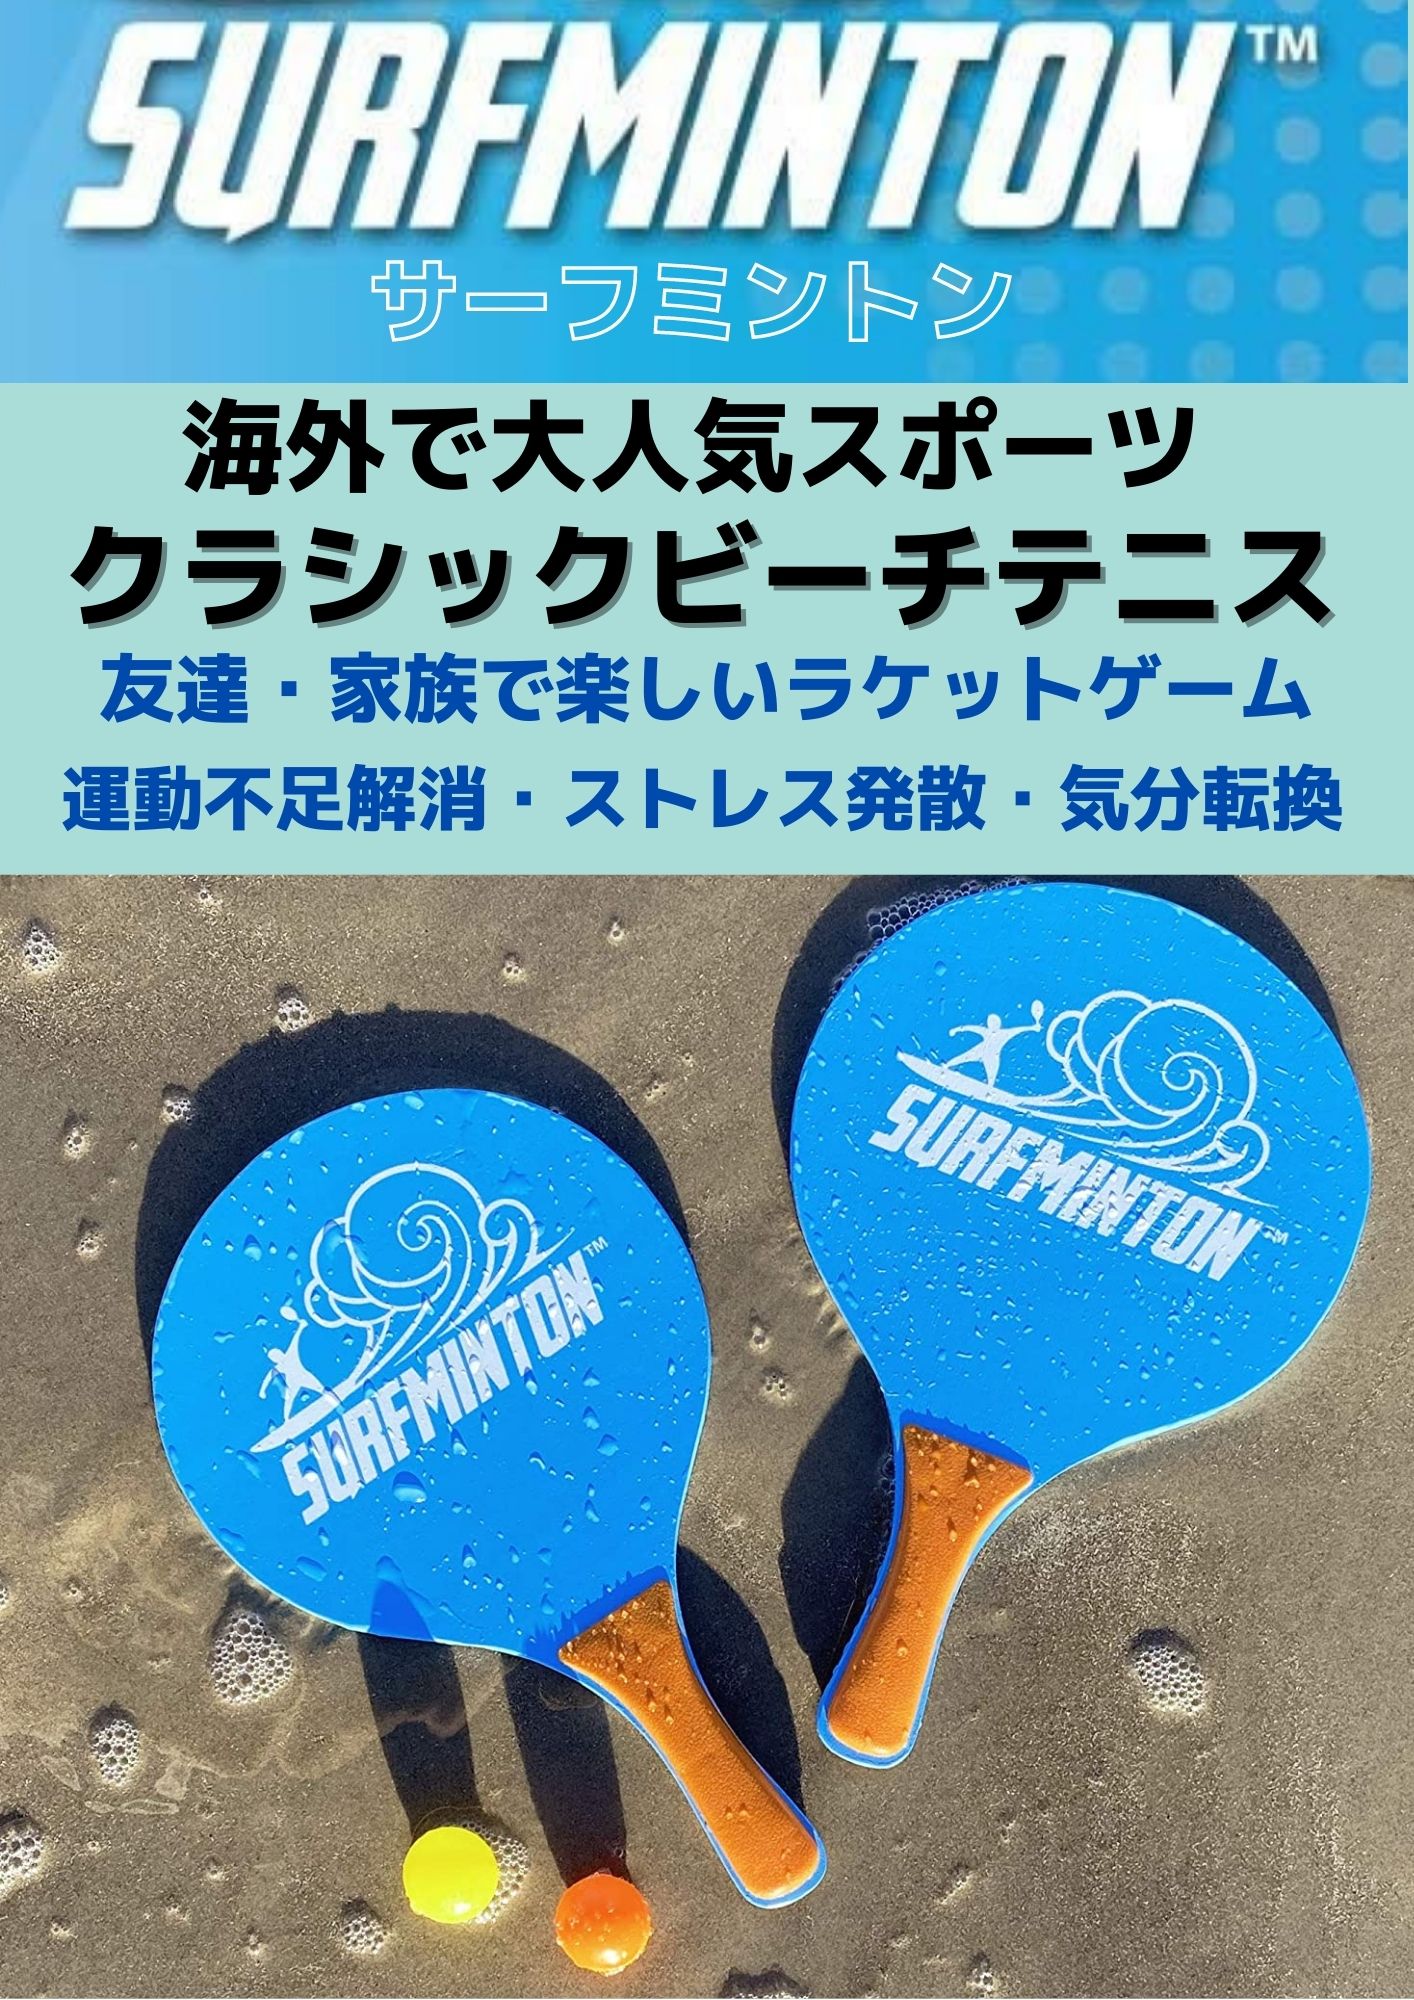 楽天市場 サーフミントン Surfminton ビーチテニス パドルゲーム ボール 4個 ラケット 2本 メッシュバッグ セット 屋外 防水 おもちゃ ファミリースポーツ 日本正規品 Rita Market